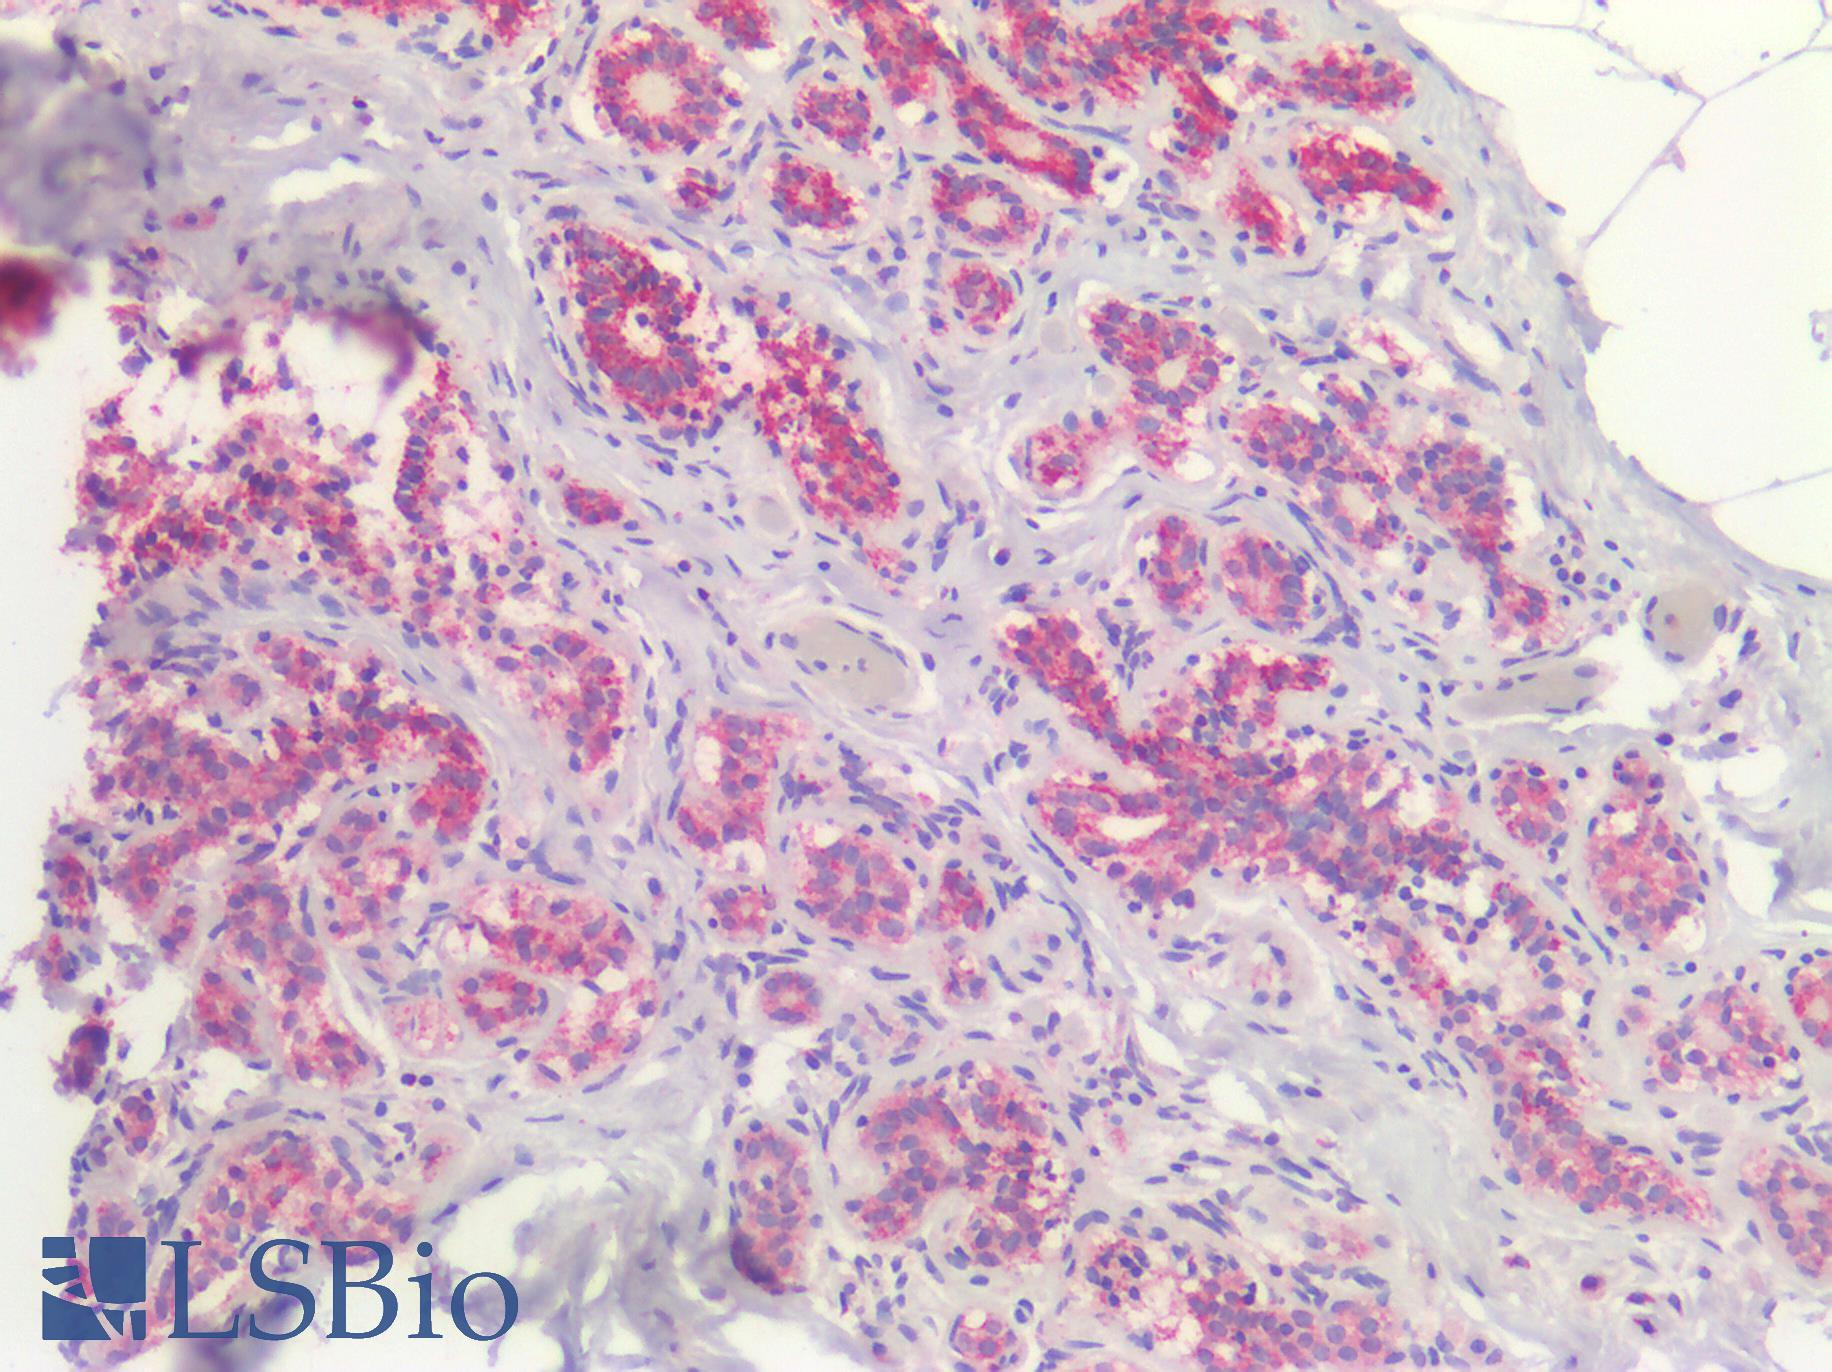 BRAF / B-Raf Antibody - Human Breast, Carcinoma: Formalin-Fixed, Paraffin-Embedded (FFPE)